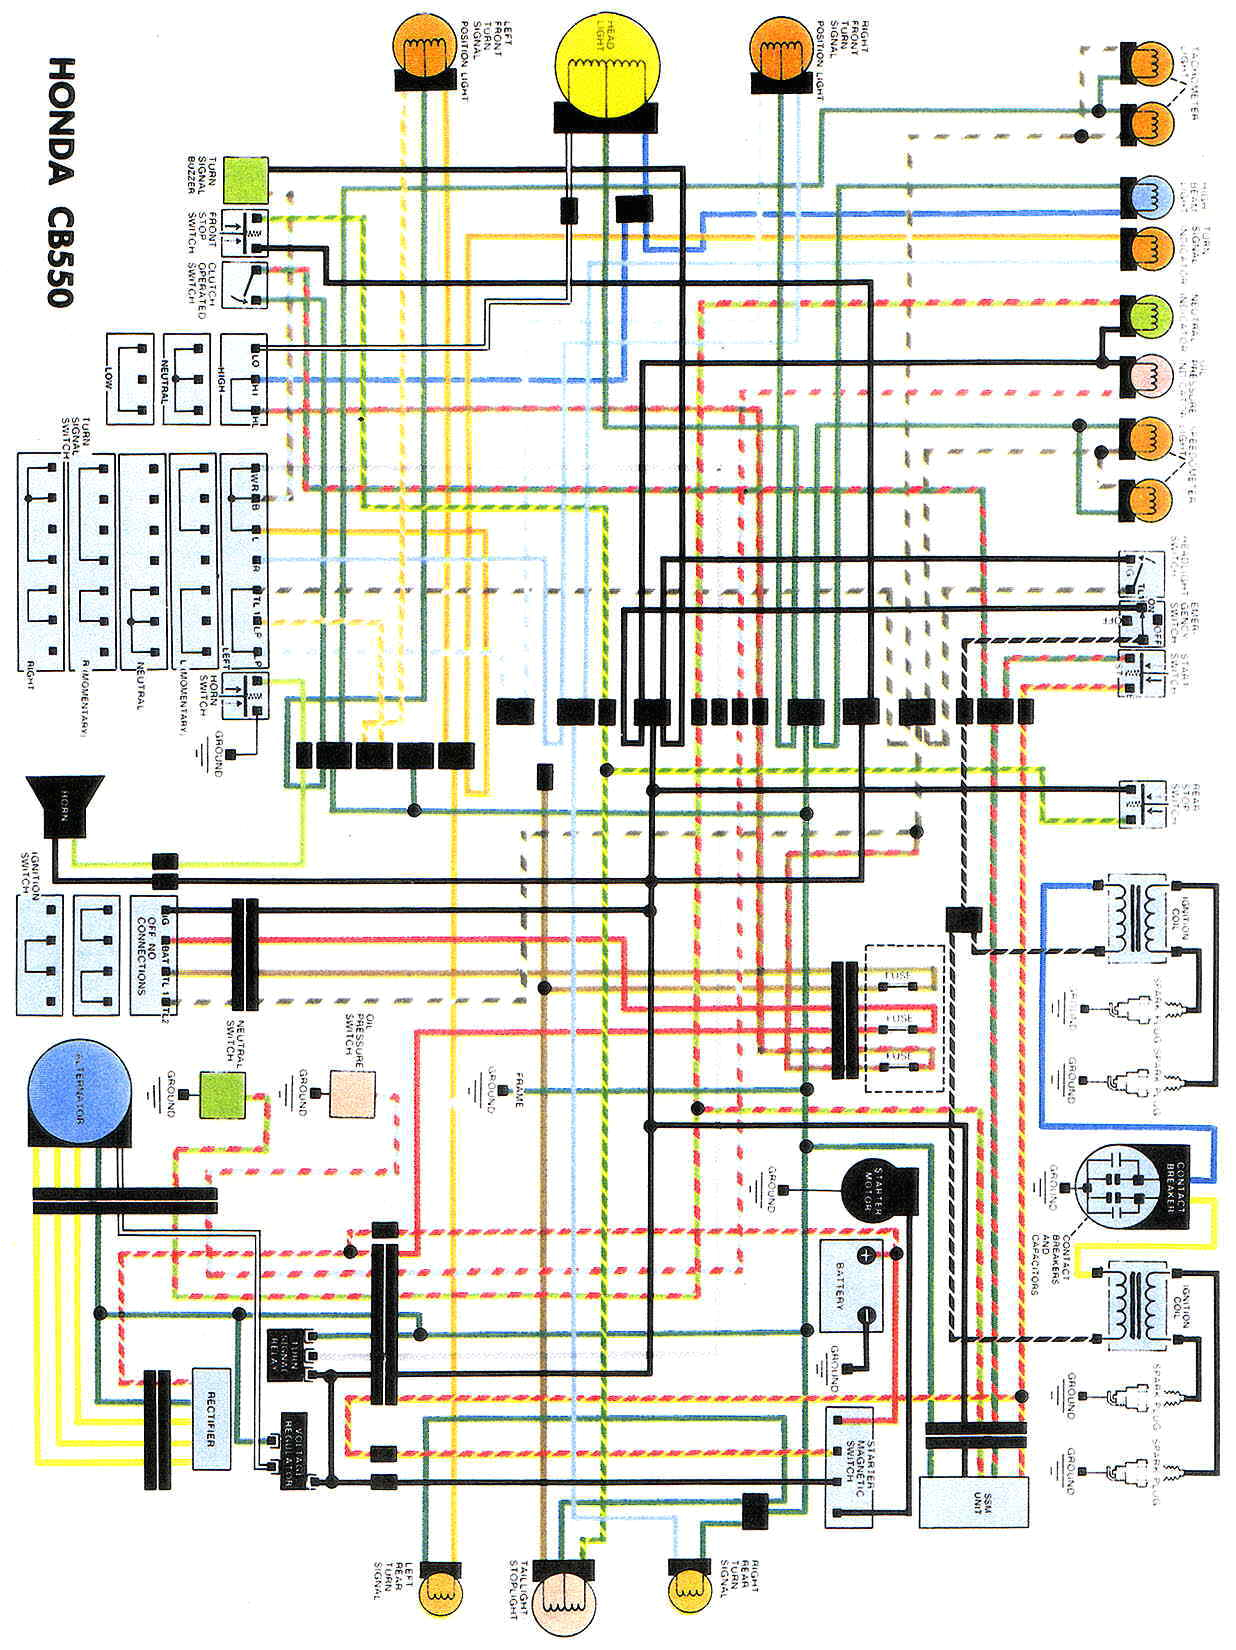 1983 nighthawk 650 ignition system wiring diagram wiring diagram honda cb 700 wire diagram